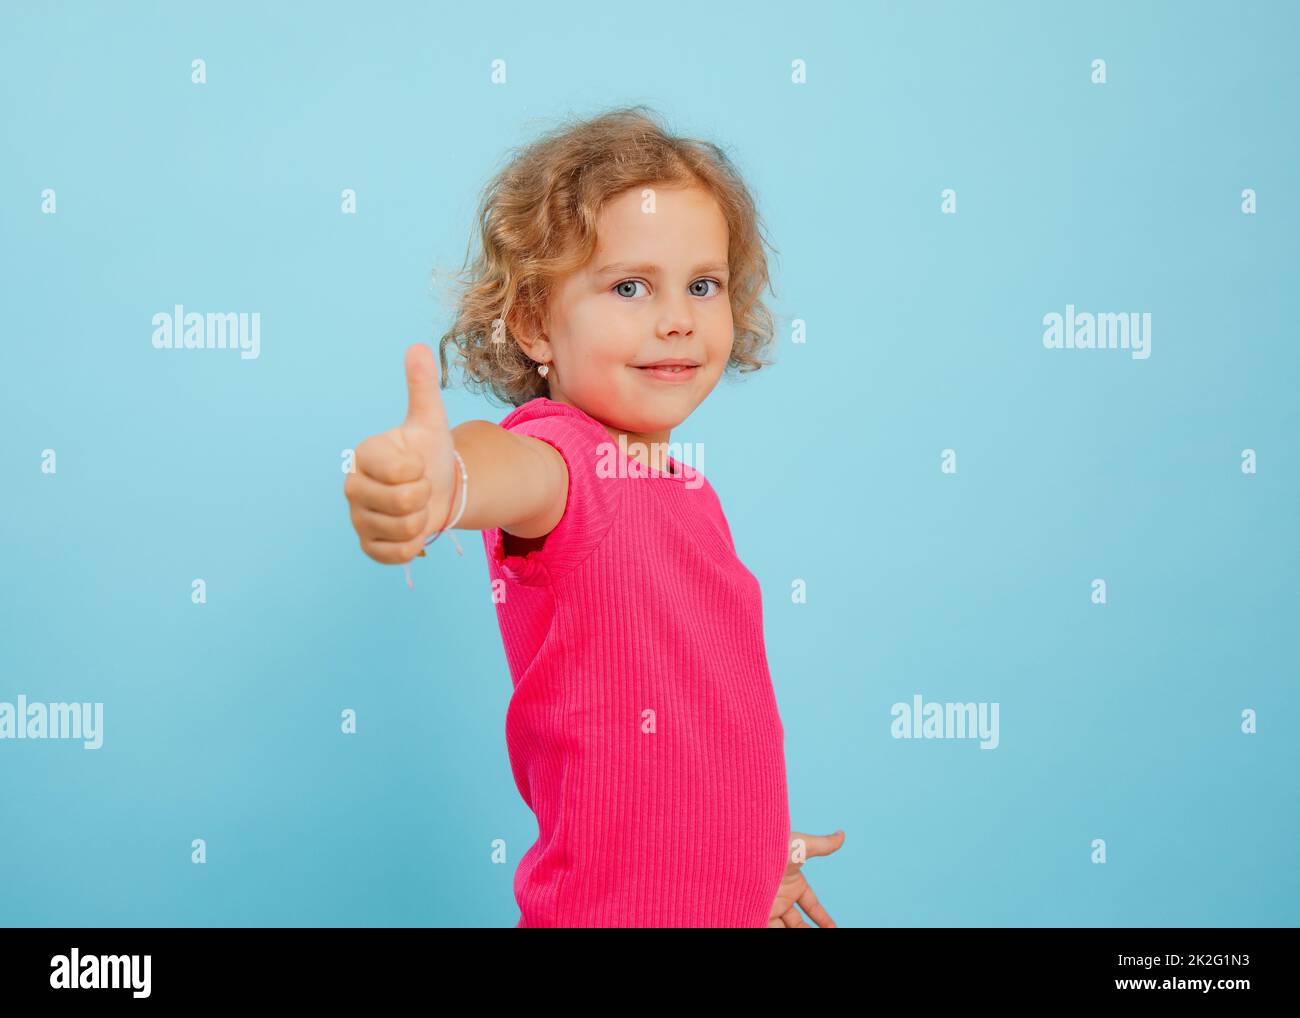 Charmantes kleines Mädchen stehen mit Finger nach oben auf ausgestrecktem Arm auf leerem blauen Hintergrund, kopieren Raum. Foto von glücklichen Kind im Kindergartenalter mit Stockfoto